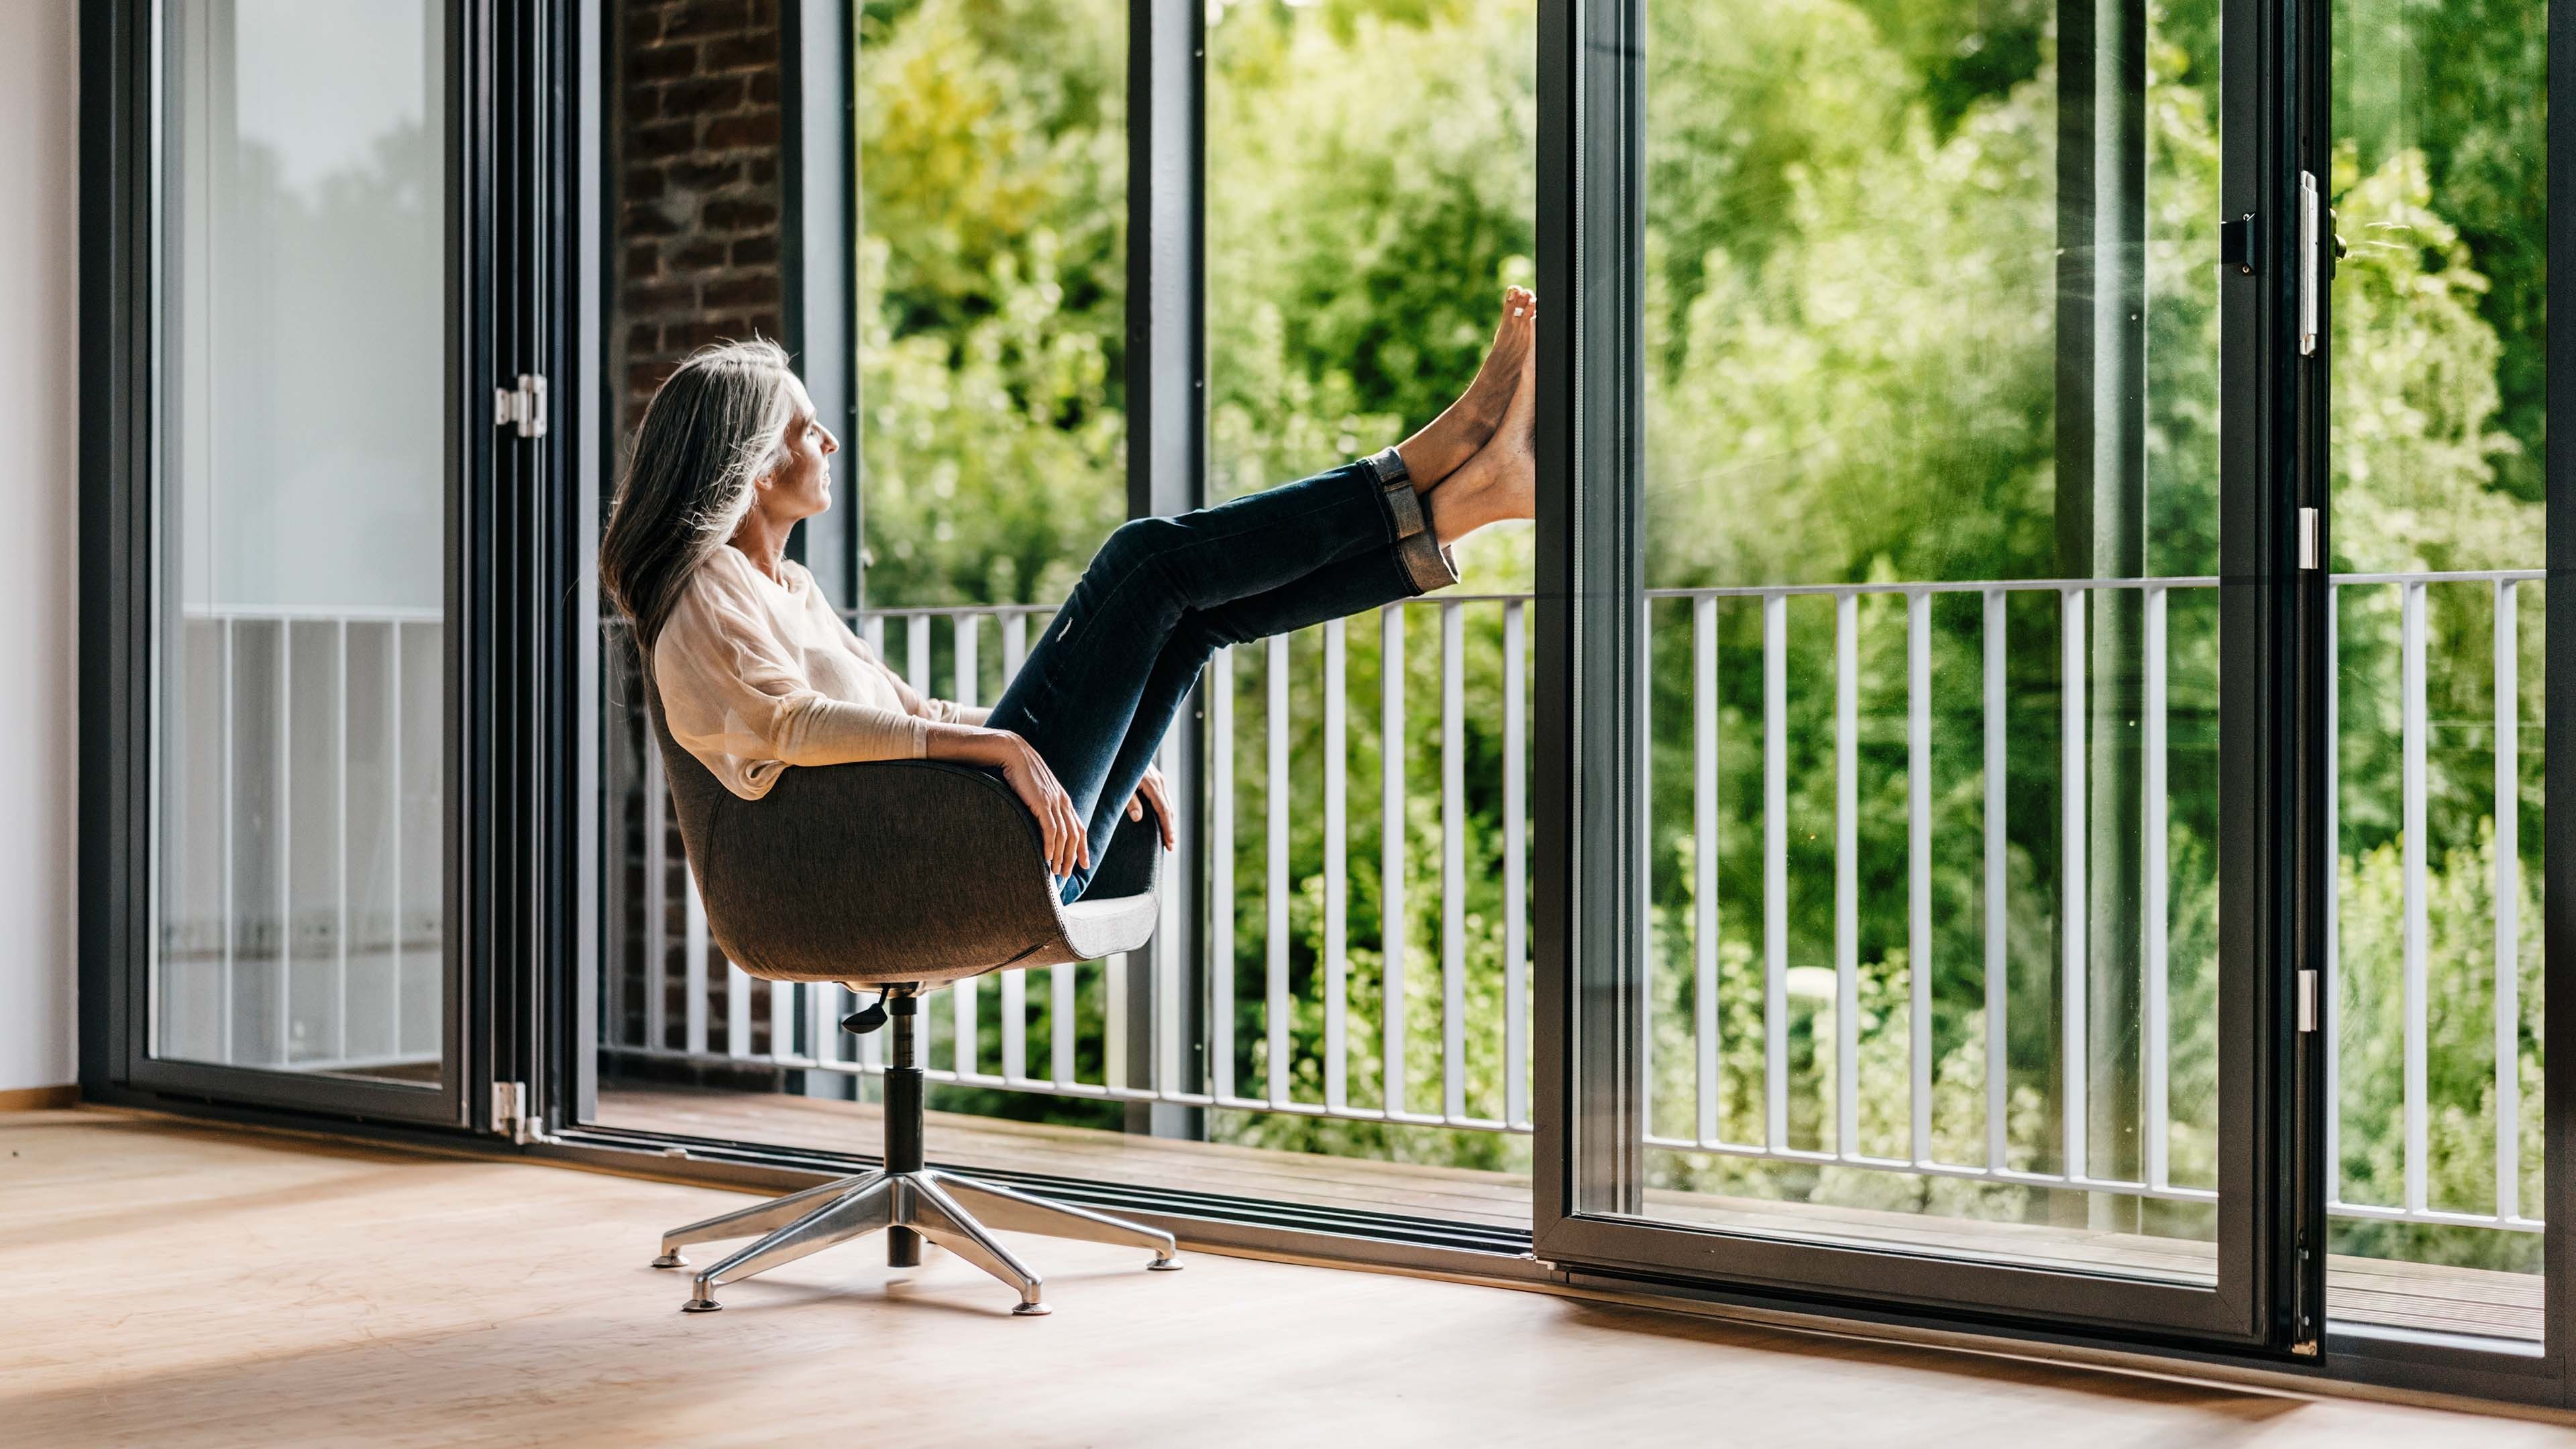 Frau im Sessel blickt aus dem Fenster in die Natur und spart dank guten Entscheidungen Steuern